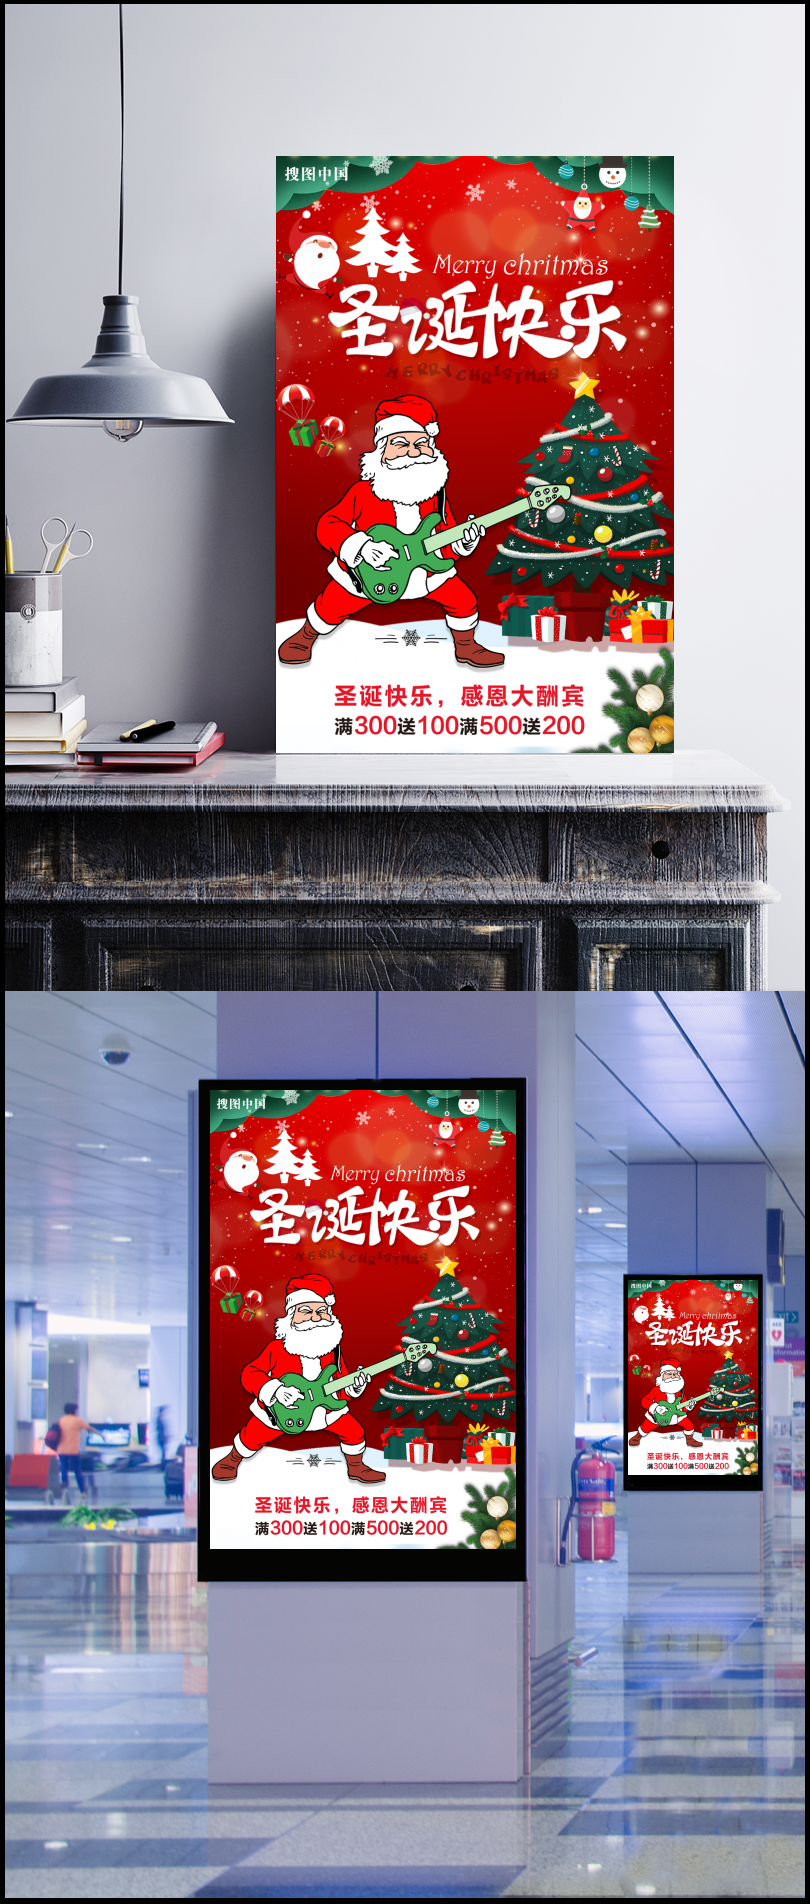 圣诞快乐红色卡通扁平化节日圣诞节海报